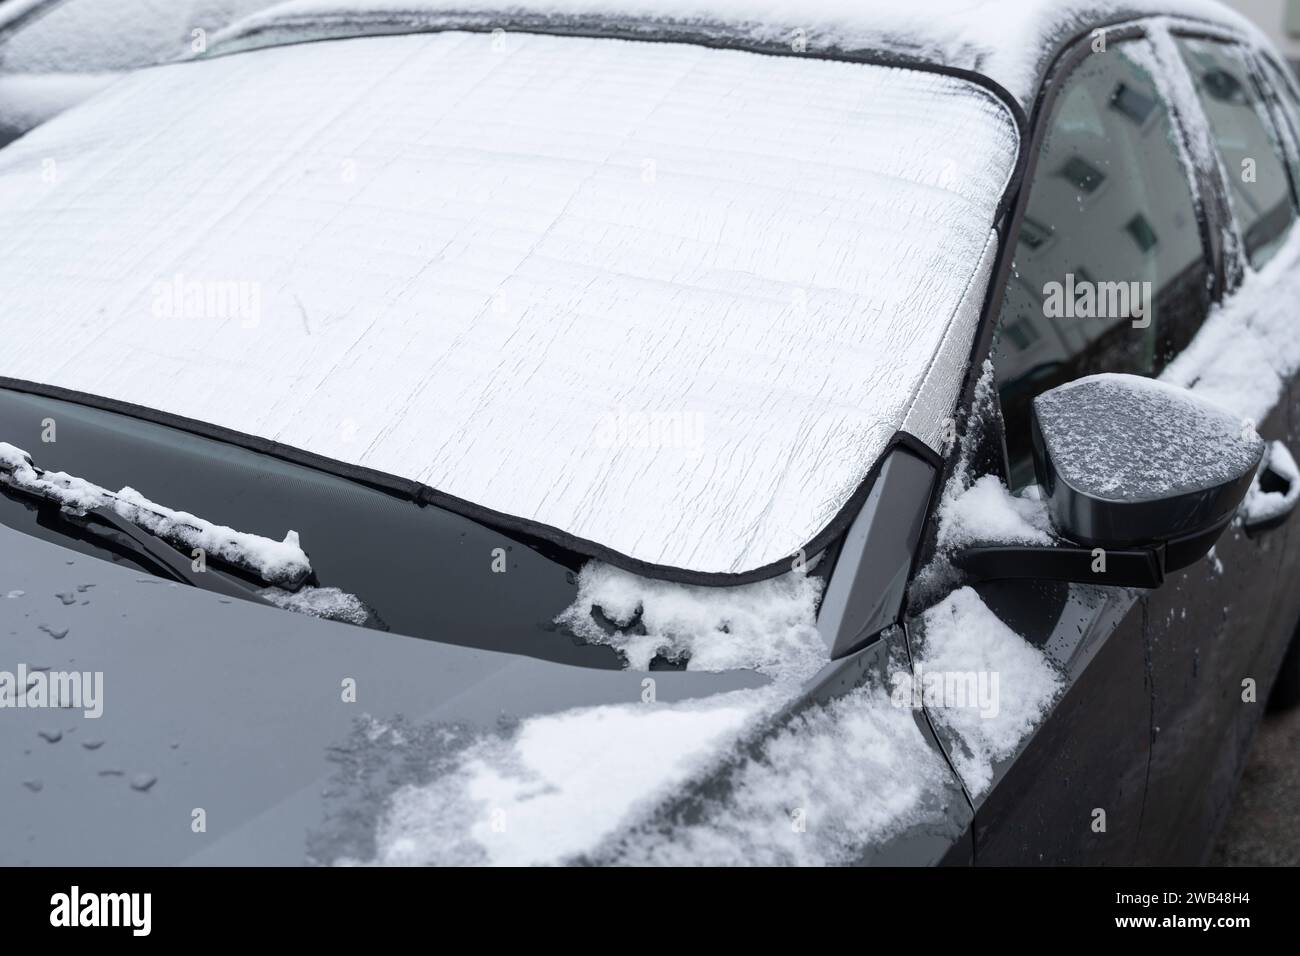 https://c8.alamy.com/comp/2WB48H4/bavaria-germany-january-8-2024-parked-car-in-winter-with-a-windshield-cover-to-protect-against-snow-and-ice-geparktes-auto-im-winter-mit-einer-windschutzscheiben-abdeckung-zum-schutz-vor-schnee-und-eis-2WB48H4.jpg